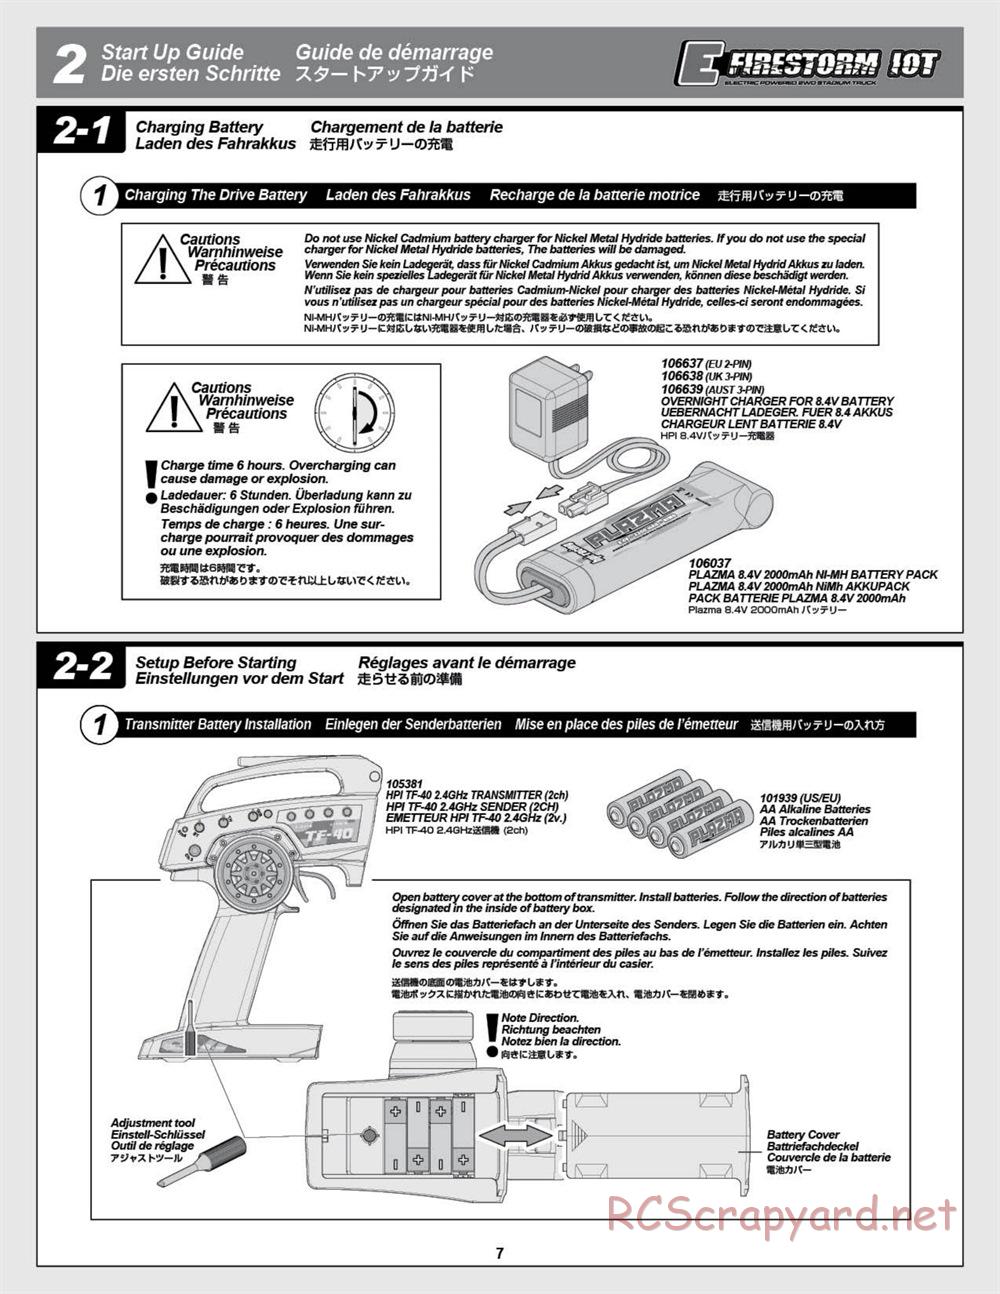 HPI - E-Firestorm-10T - Manual - Page 7